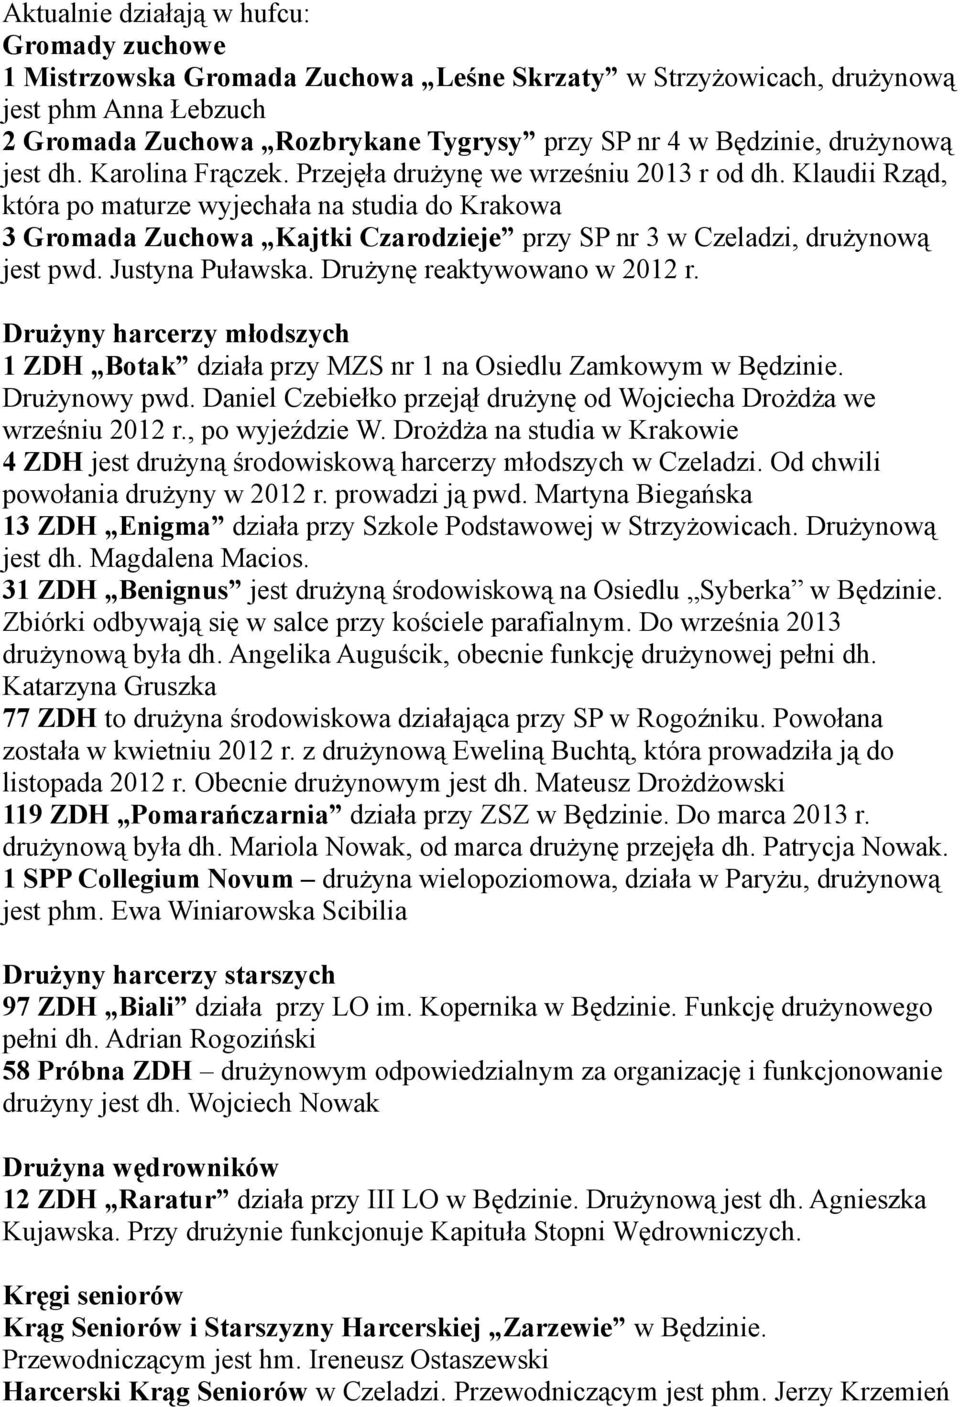 Klaudii Rząd, która po maturze wyjechała na studia do Krakowa 3 Gromada Zuchowa Kajtki Czarodzieje przy SP nr 3 w Czeladzi, drużynową jest pwd. Justyna Puławska. Drużynę reaktywowano w 2012 r.